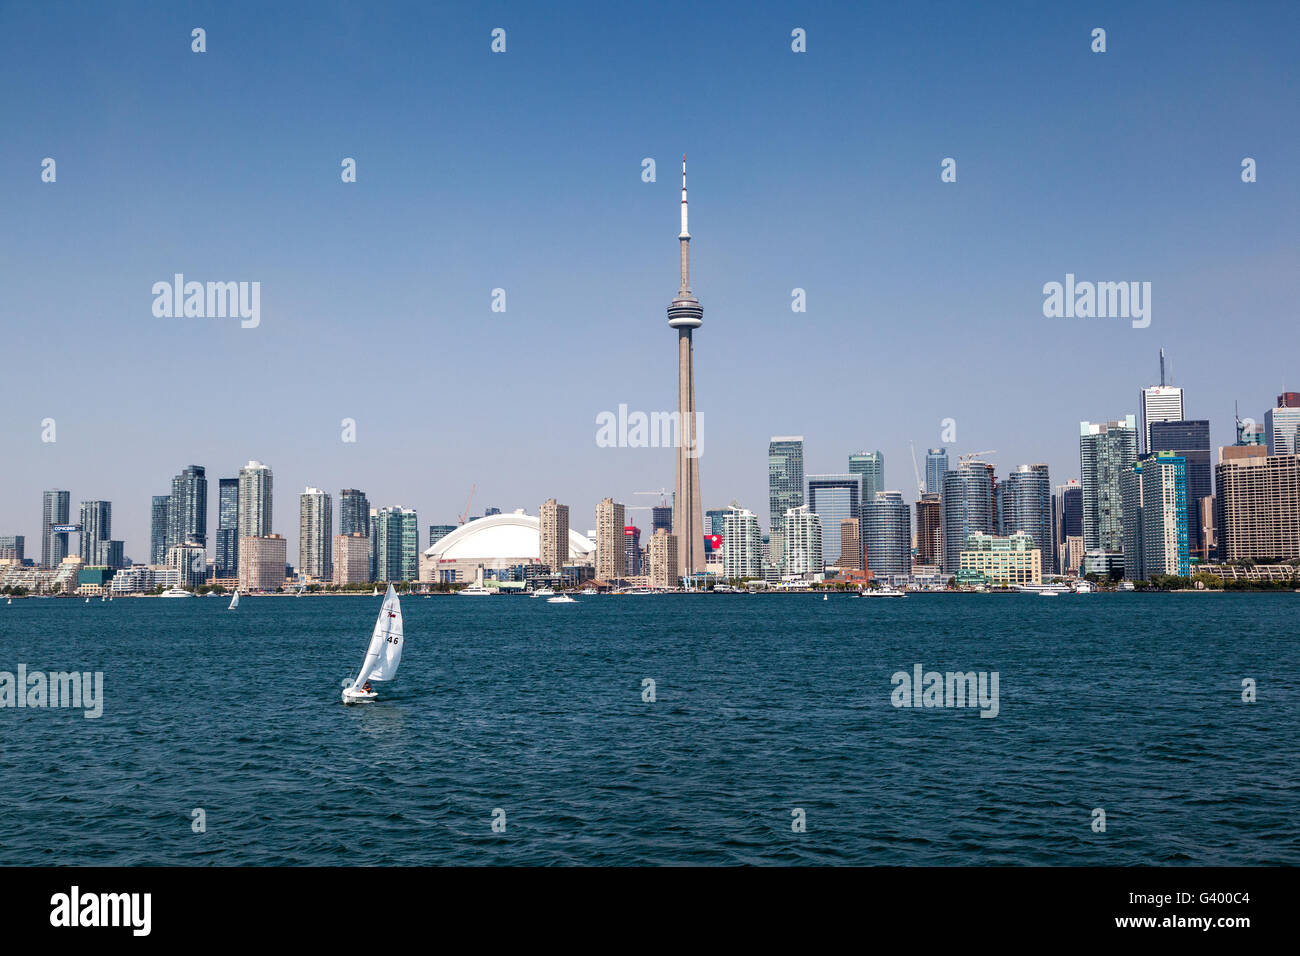 Toronto downtown skyline as viewed from Lake Ontario. Stock Photo